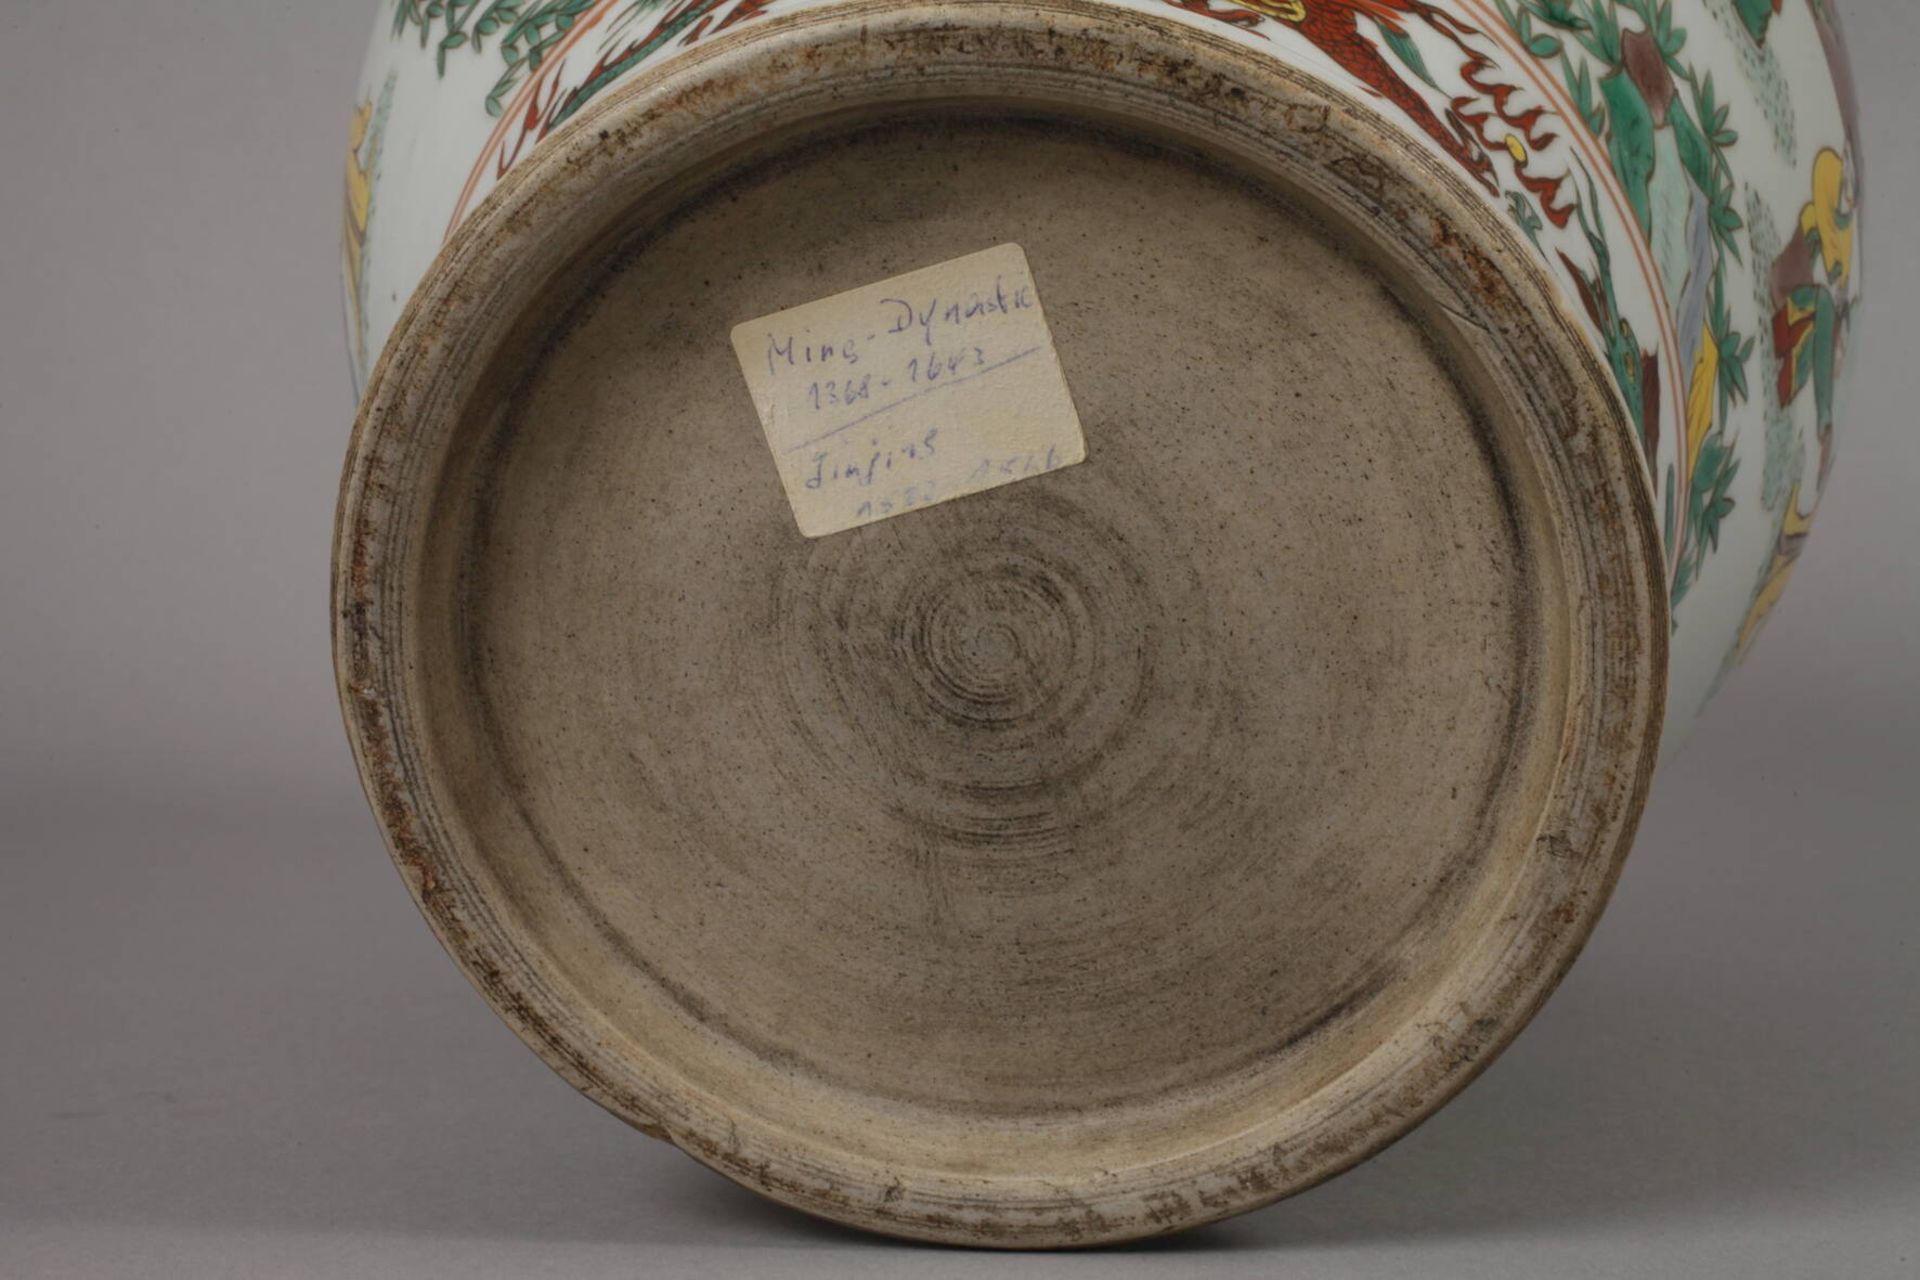 Vase Famille verte 19. Jh., ungemarkt, signiert, weiß glasiertes Porzellan in polychromer - Image 6 of 6